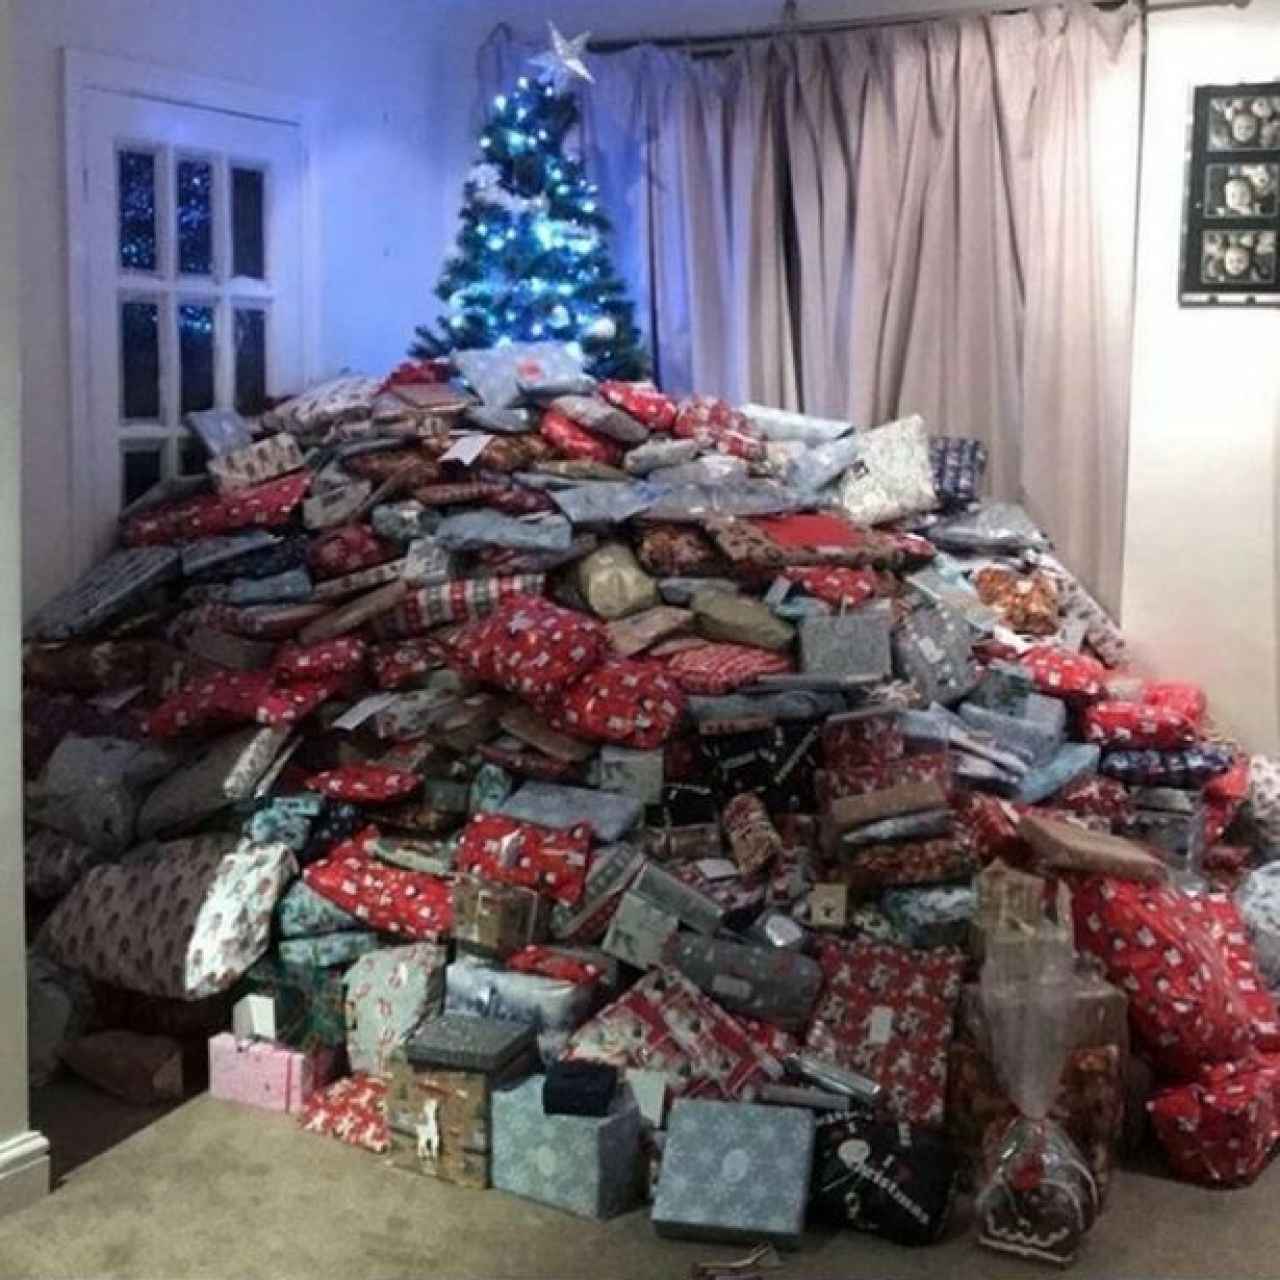 La montaña de regalos tapando el árbol de Navidad